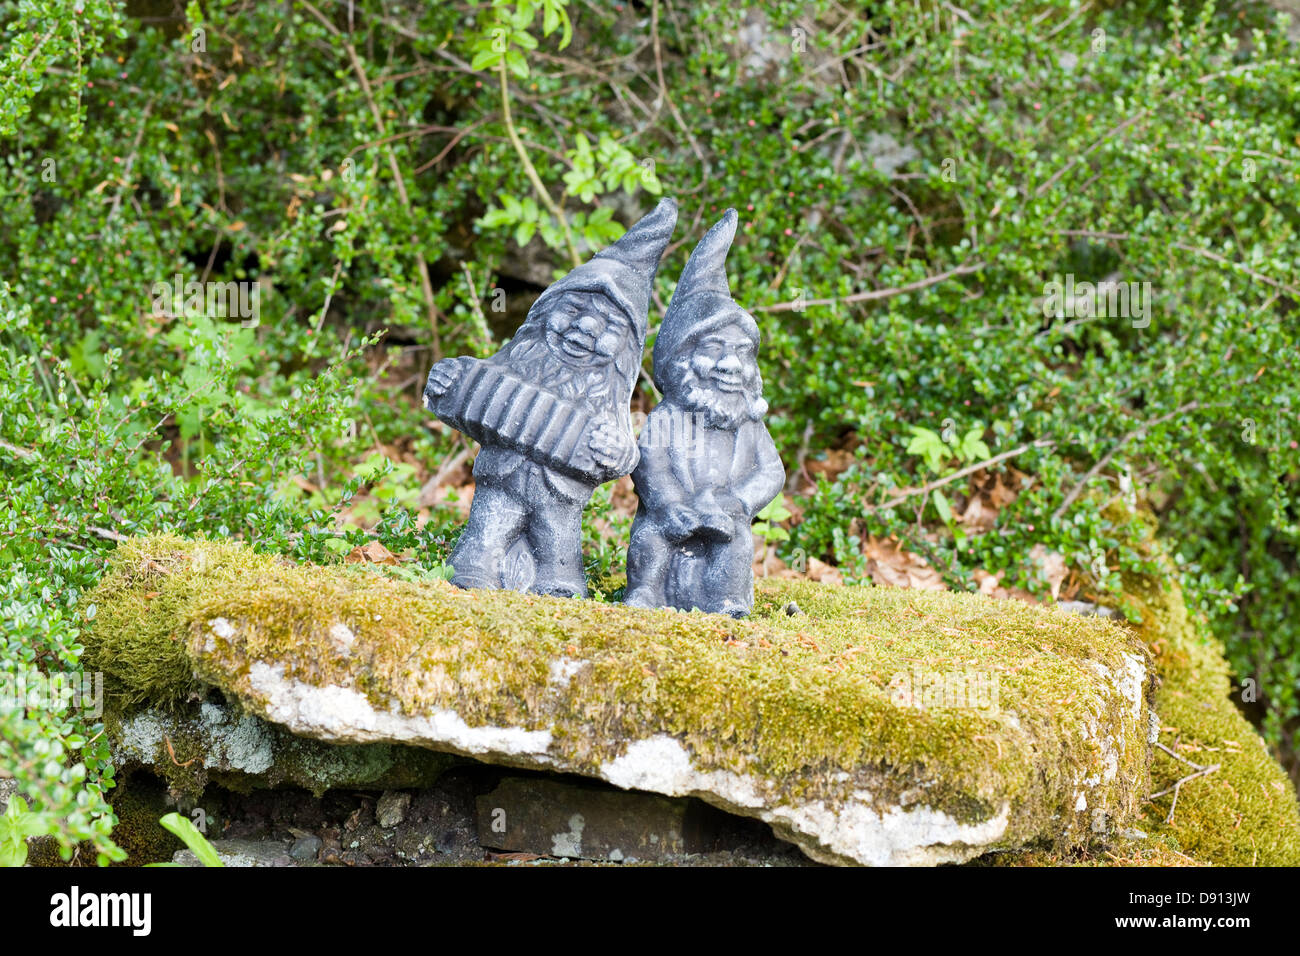 garden gnomes stood on a rock in a Garden Stock Photo